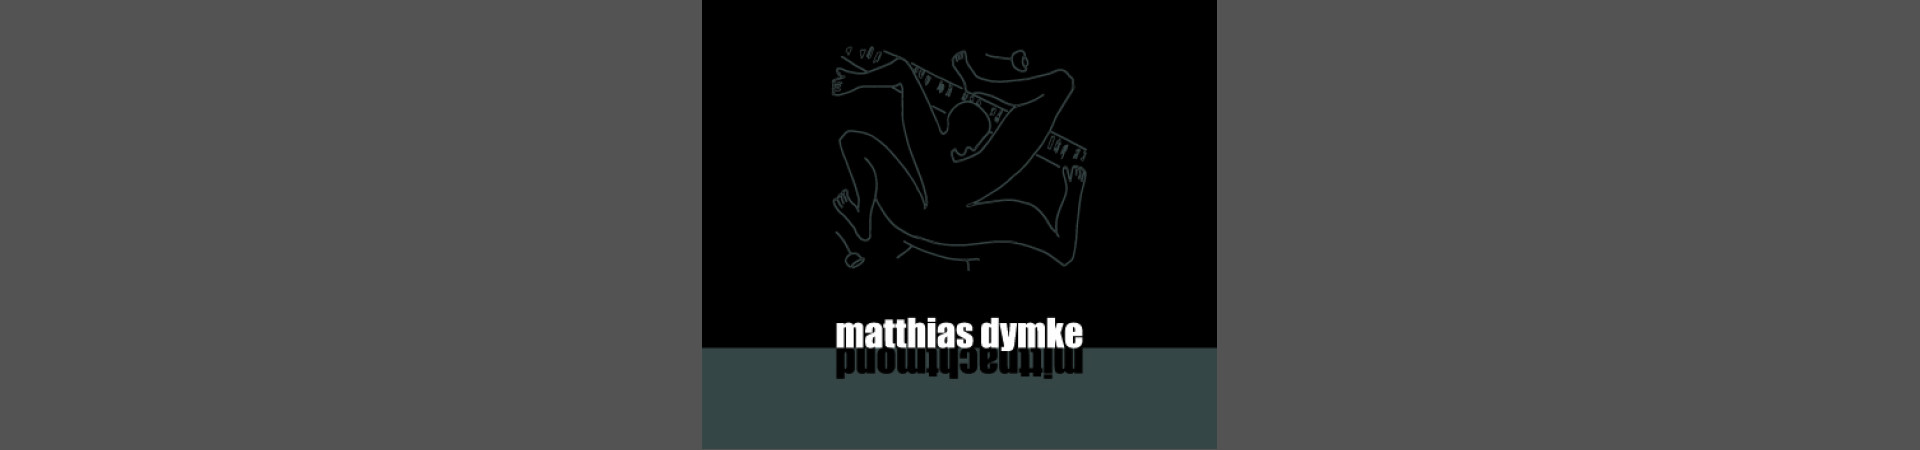 Mittnachtmond - Matthias Dymnke